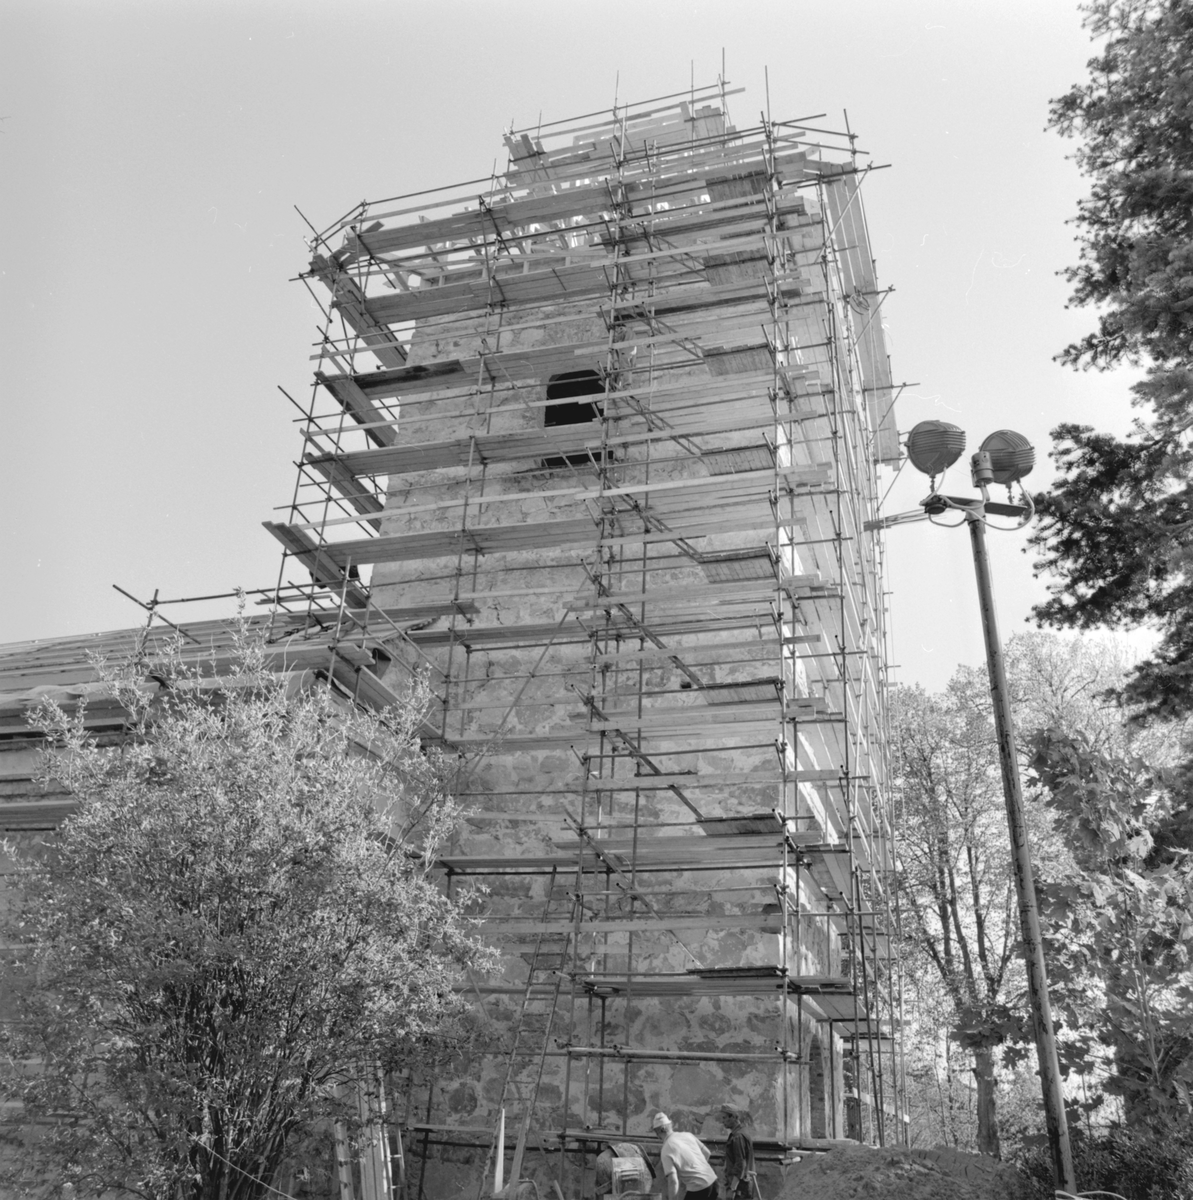 Hösten 1978 och slutskede av den nödtvungna restaureringen av Västra Husby kyrka. Den 2 mars 1977 hade en brand utbrutit som endast kvarlämnat kyrkans yttre murar. Efter arkeologiska undersökningar kunde återuppförandet snabbt påbörjas och man kunde vid tiden för bilden börja förbereda för biskops Askmarks invigning, planerad till den 22 maj 1979.